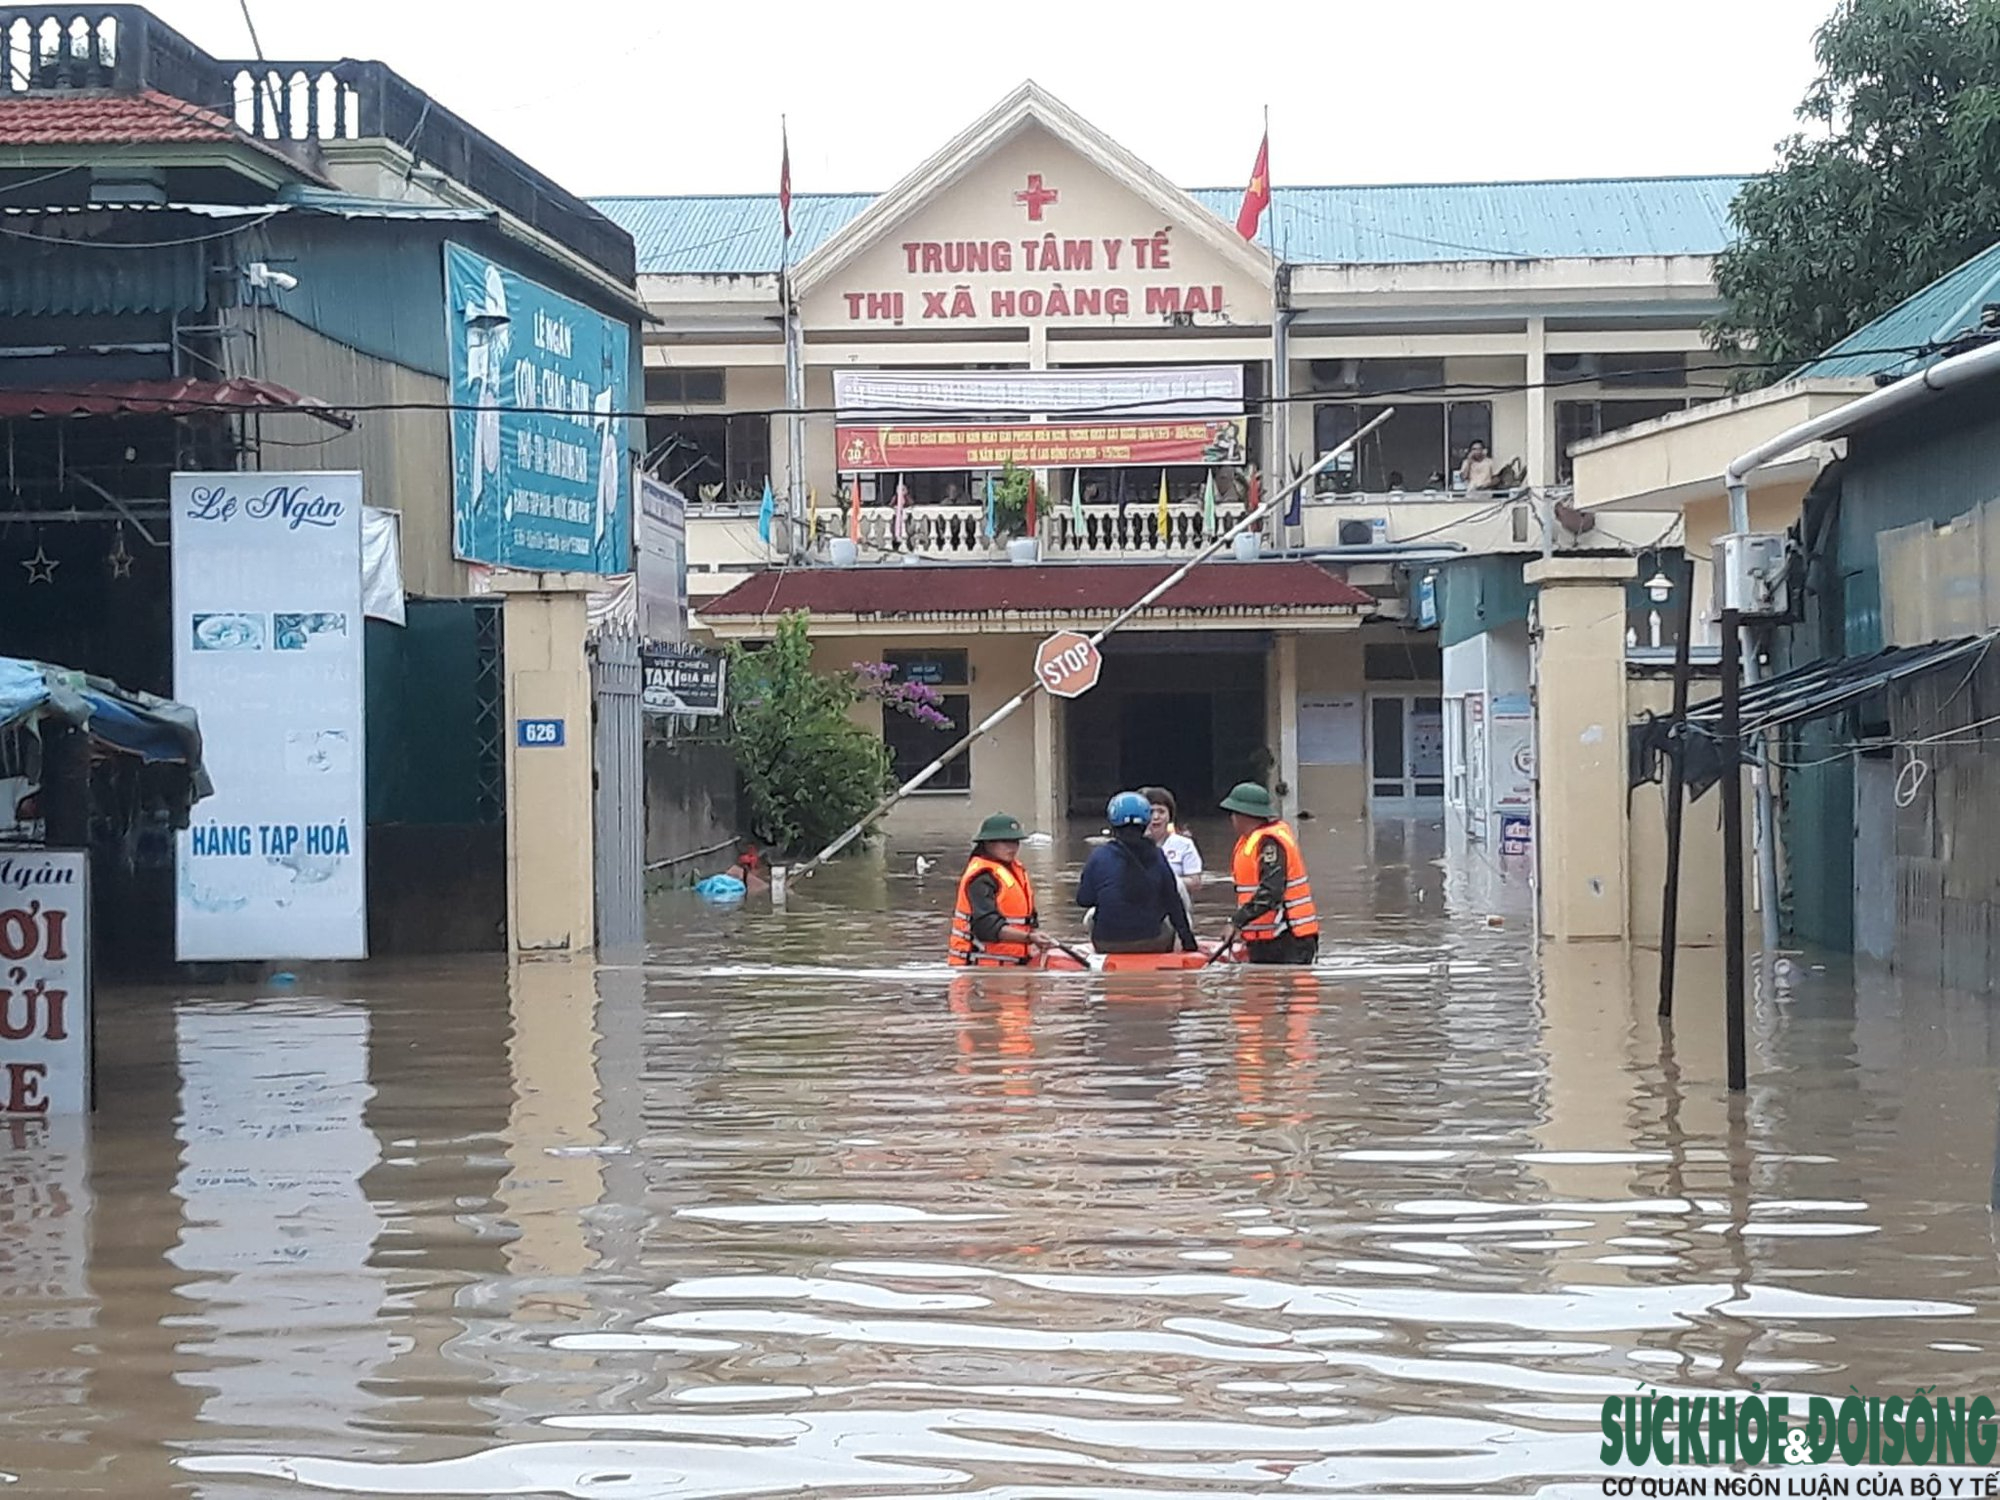  Trung tâm y tế thị xã Hoàng Mai (Nghệ An) ngập sâu trong nước . Ảnh: Trần Thanh Yên